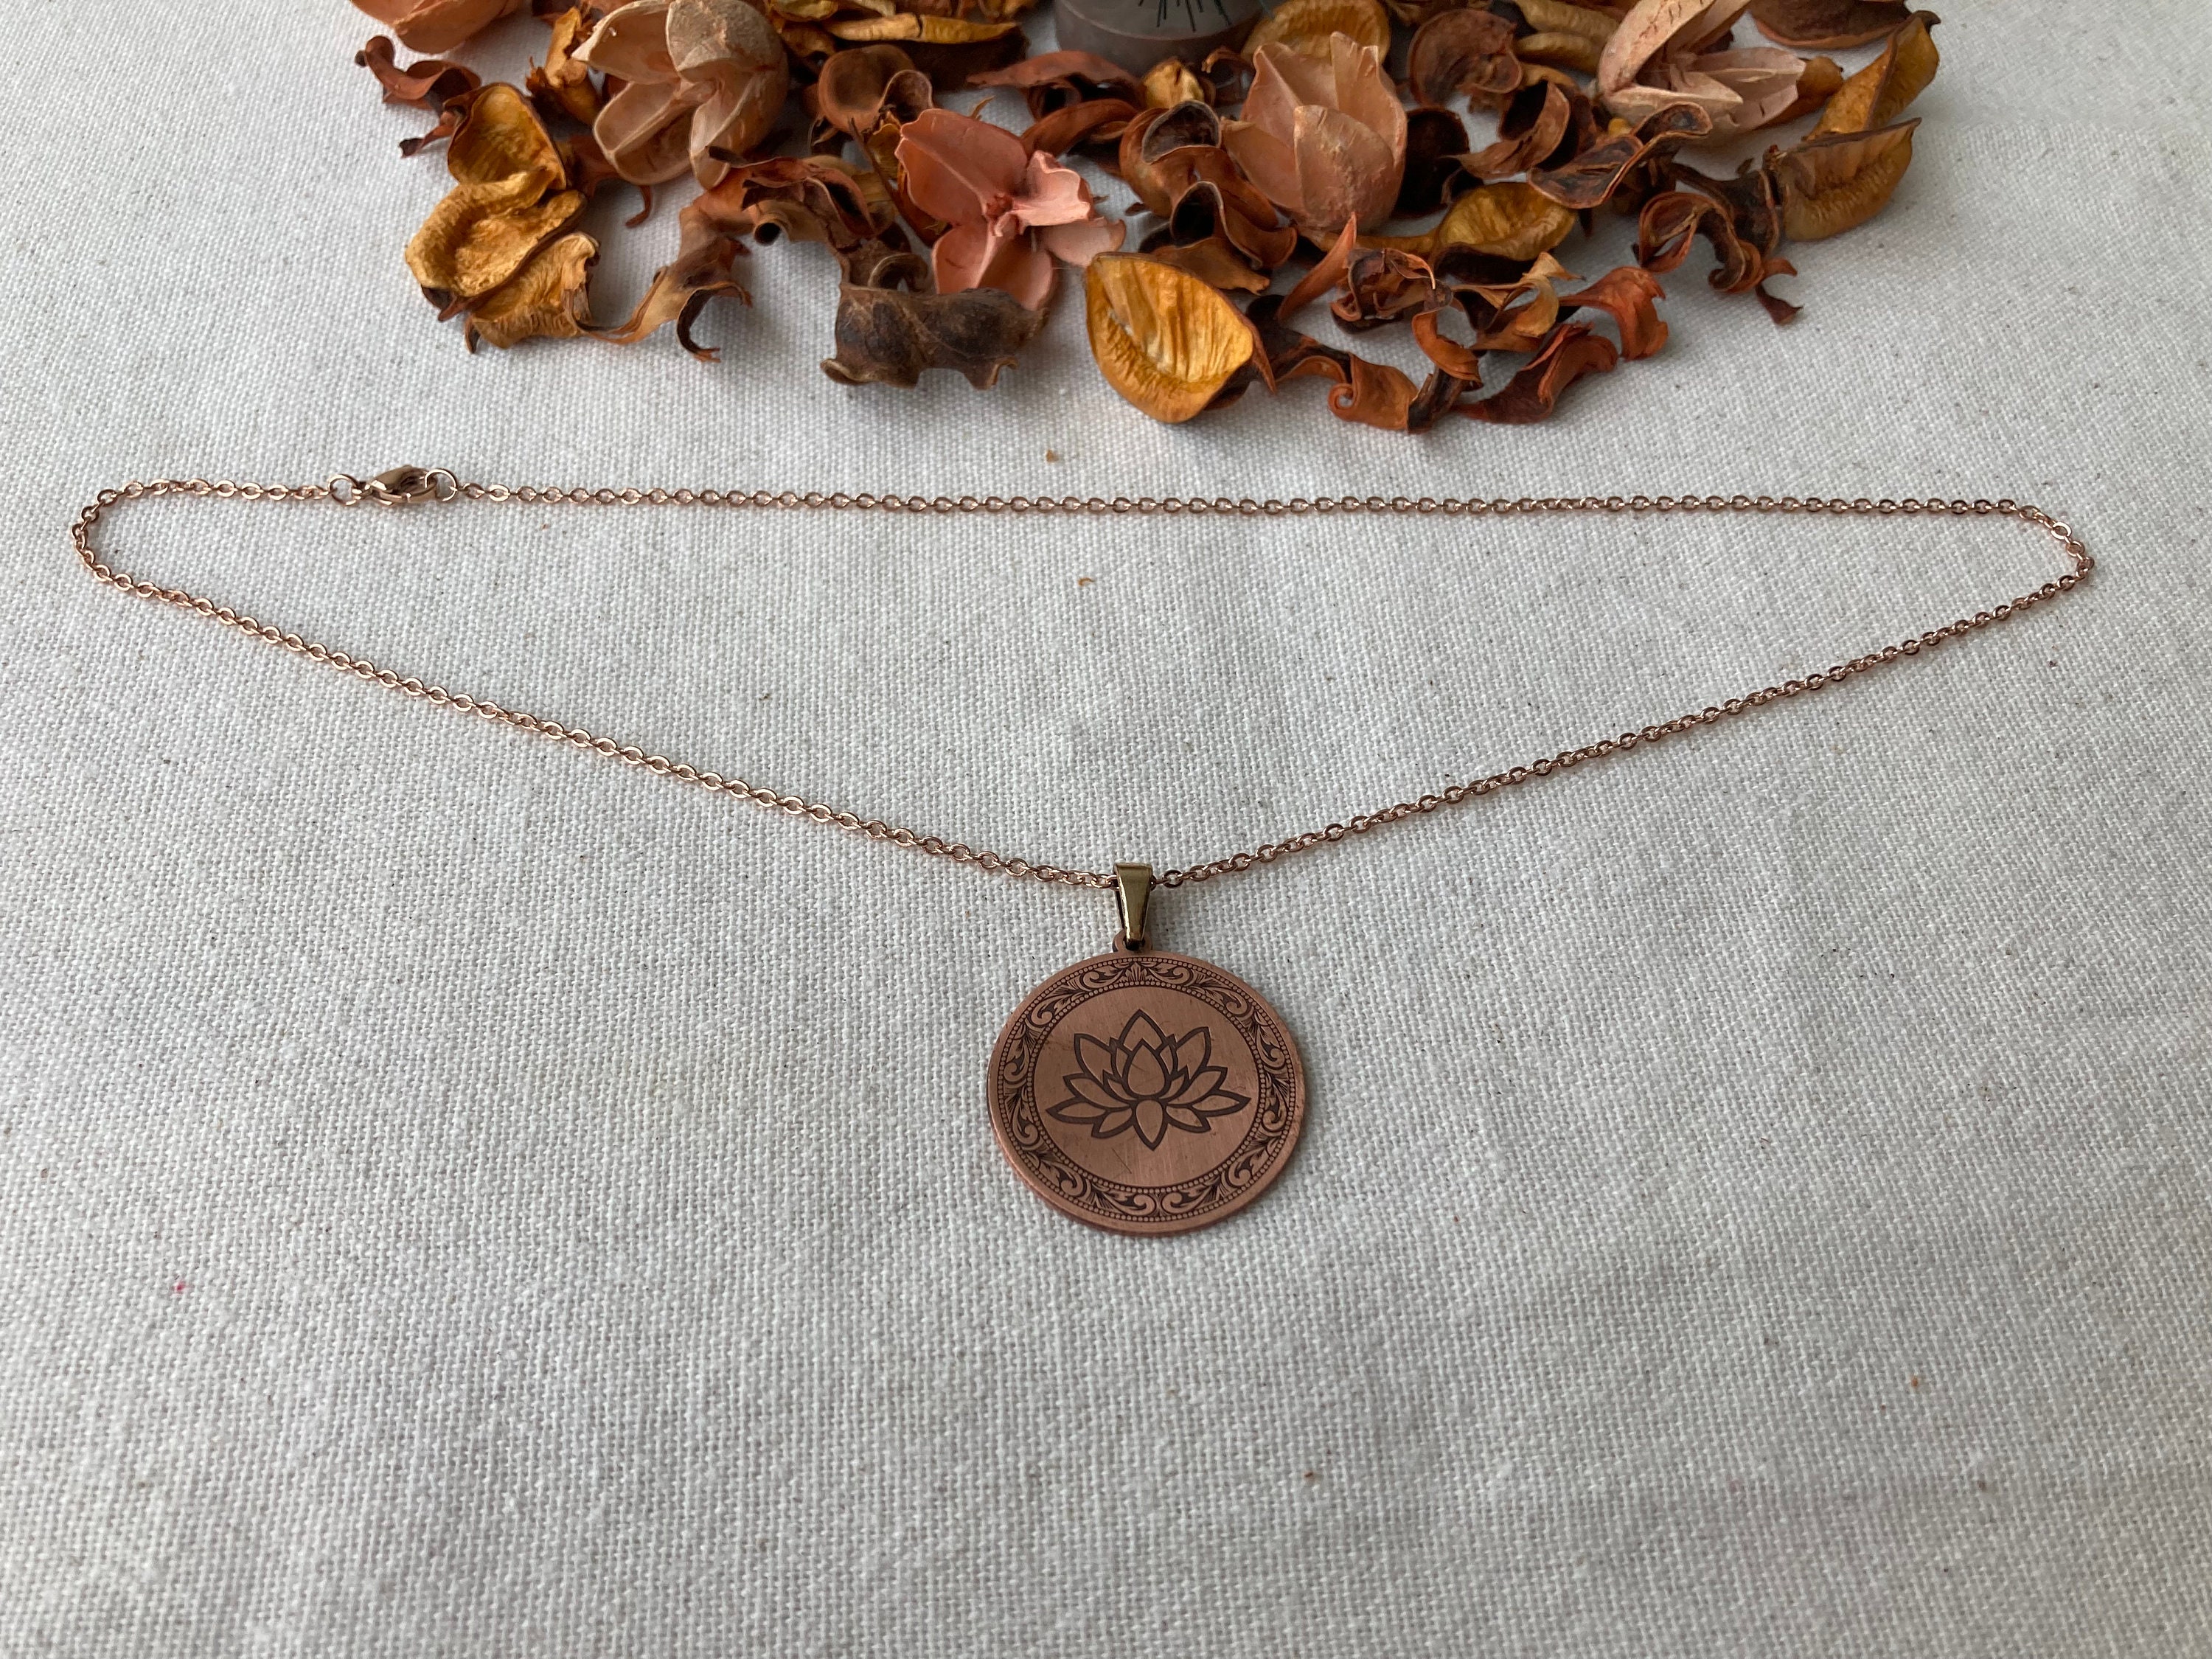 Copper Unique Necklace Jewellery Gift Pure Arthritis Copper - Etsy